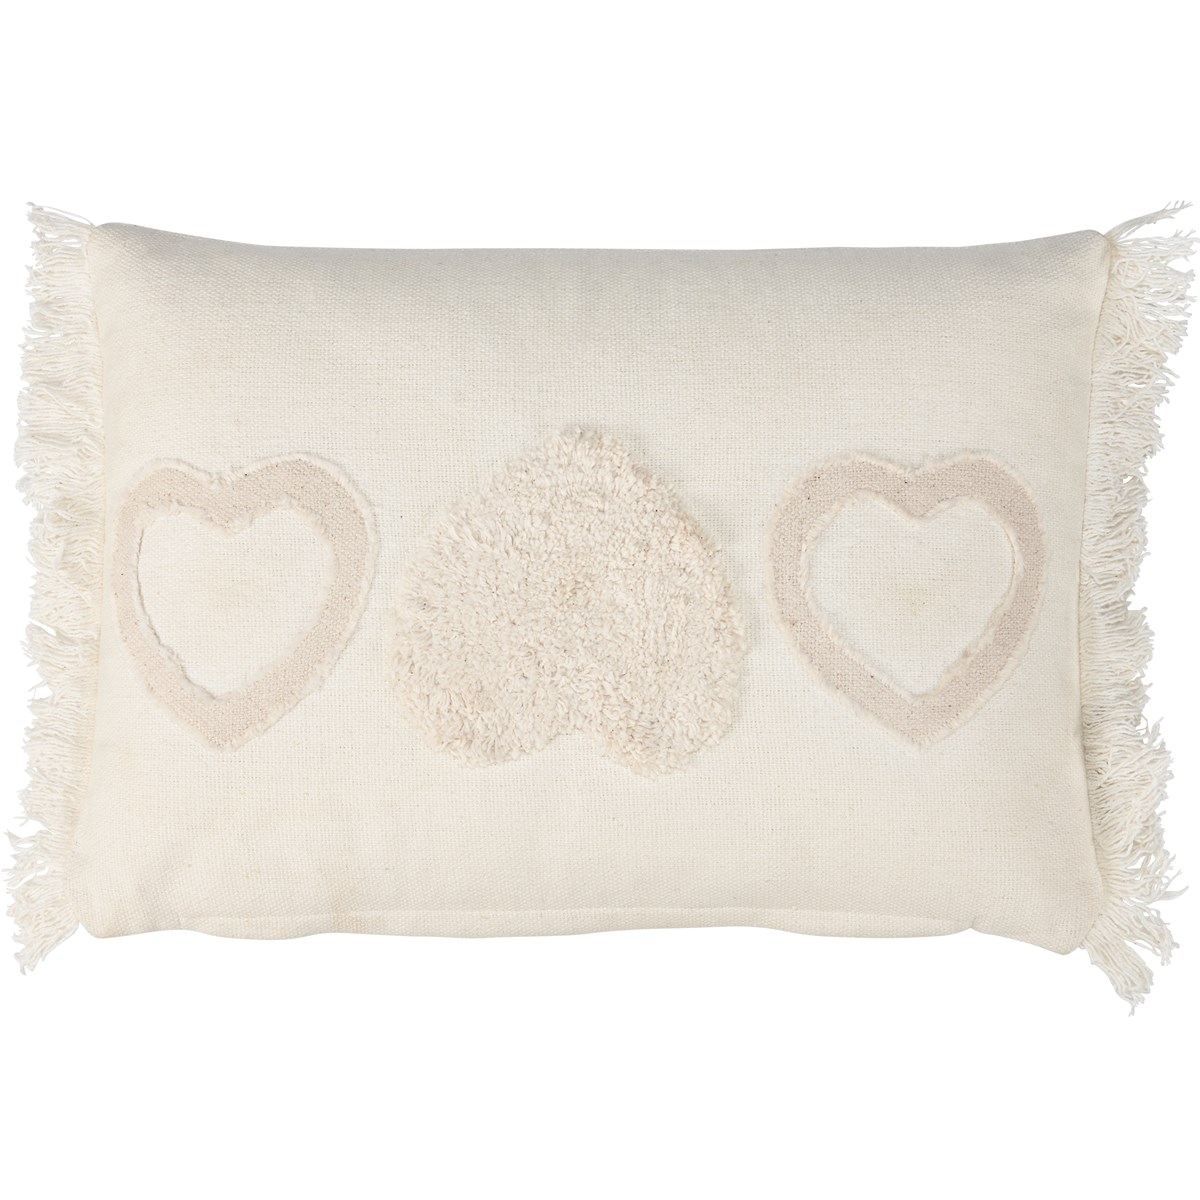 Textured Heart Pillow - Cotton, Zipper